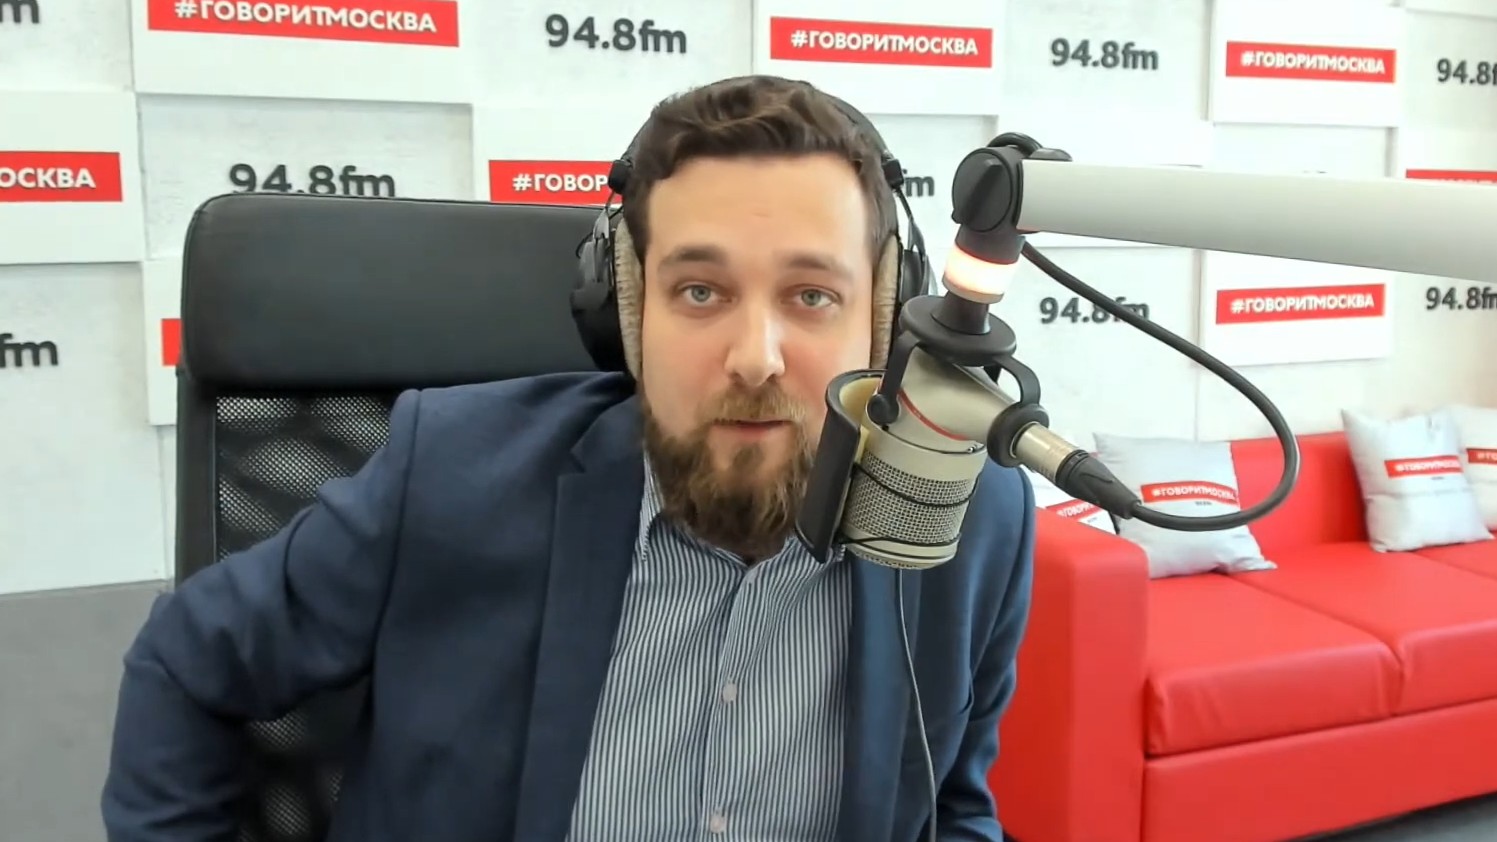 Ведущий радио говорит Москва